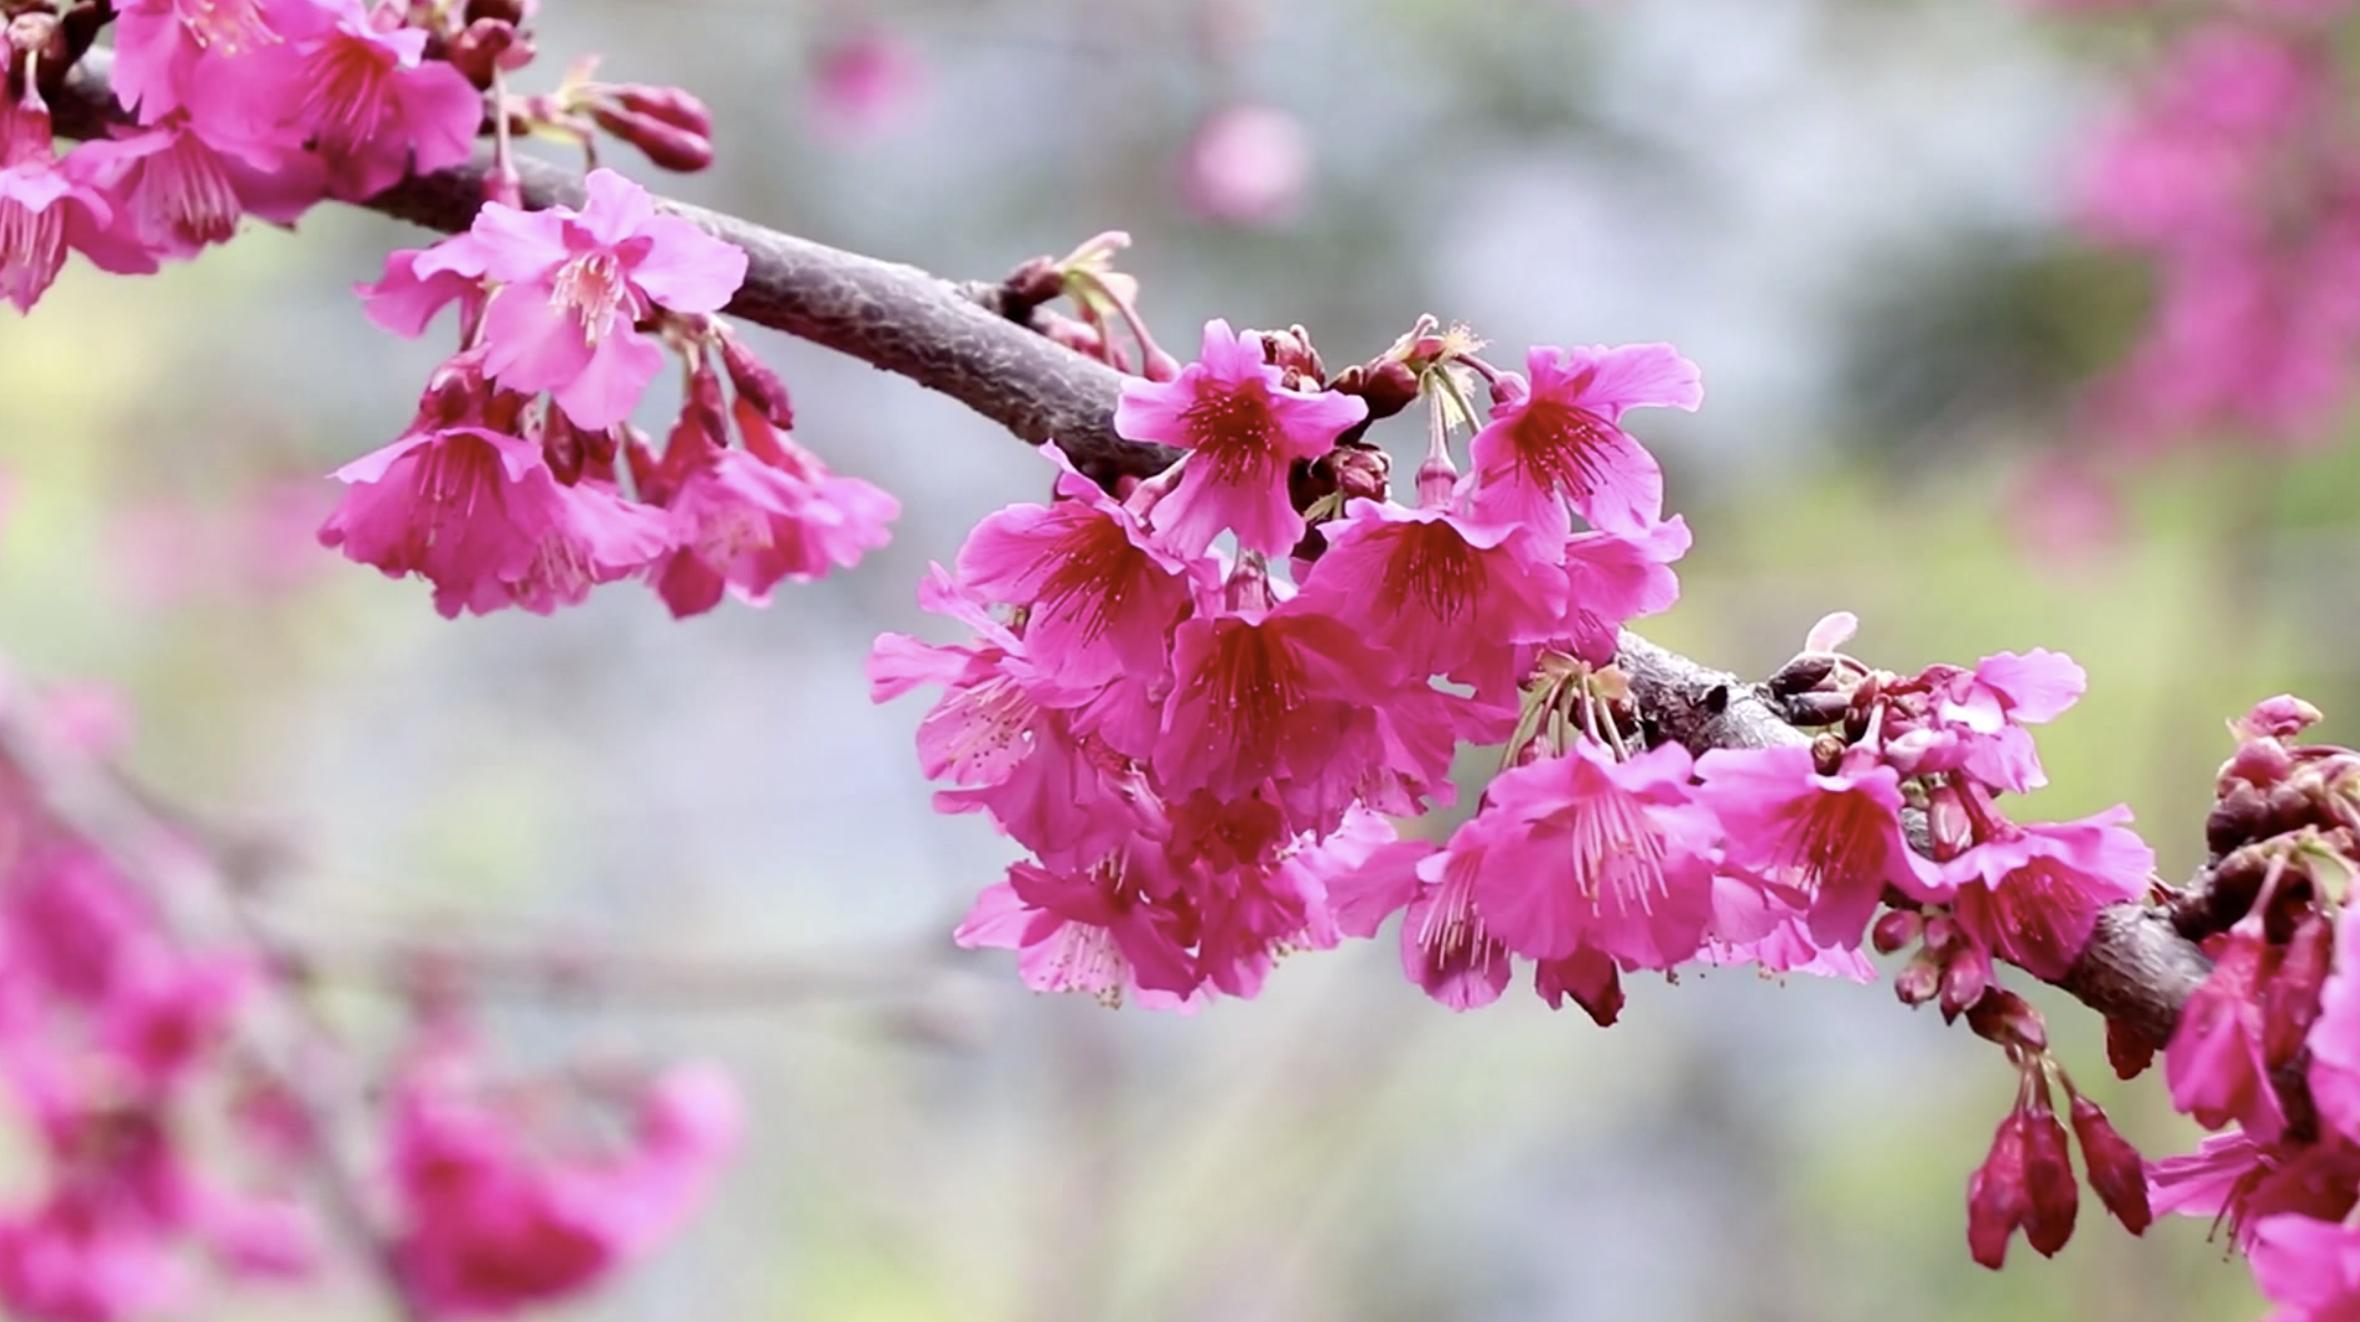 Turistas admiran la flor de cerezo rosa que florece en el invierno del  norte de Tailandia - CGTN en Español